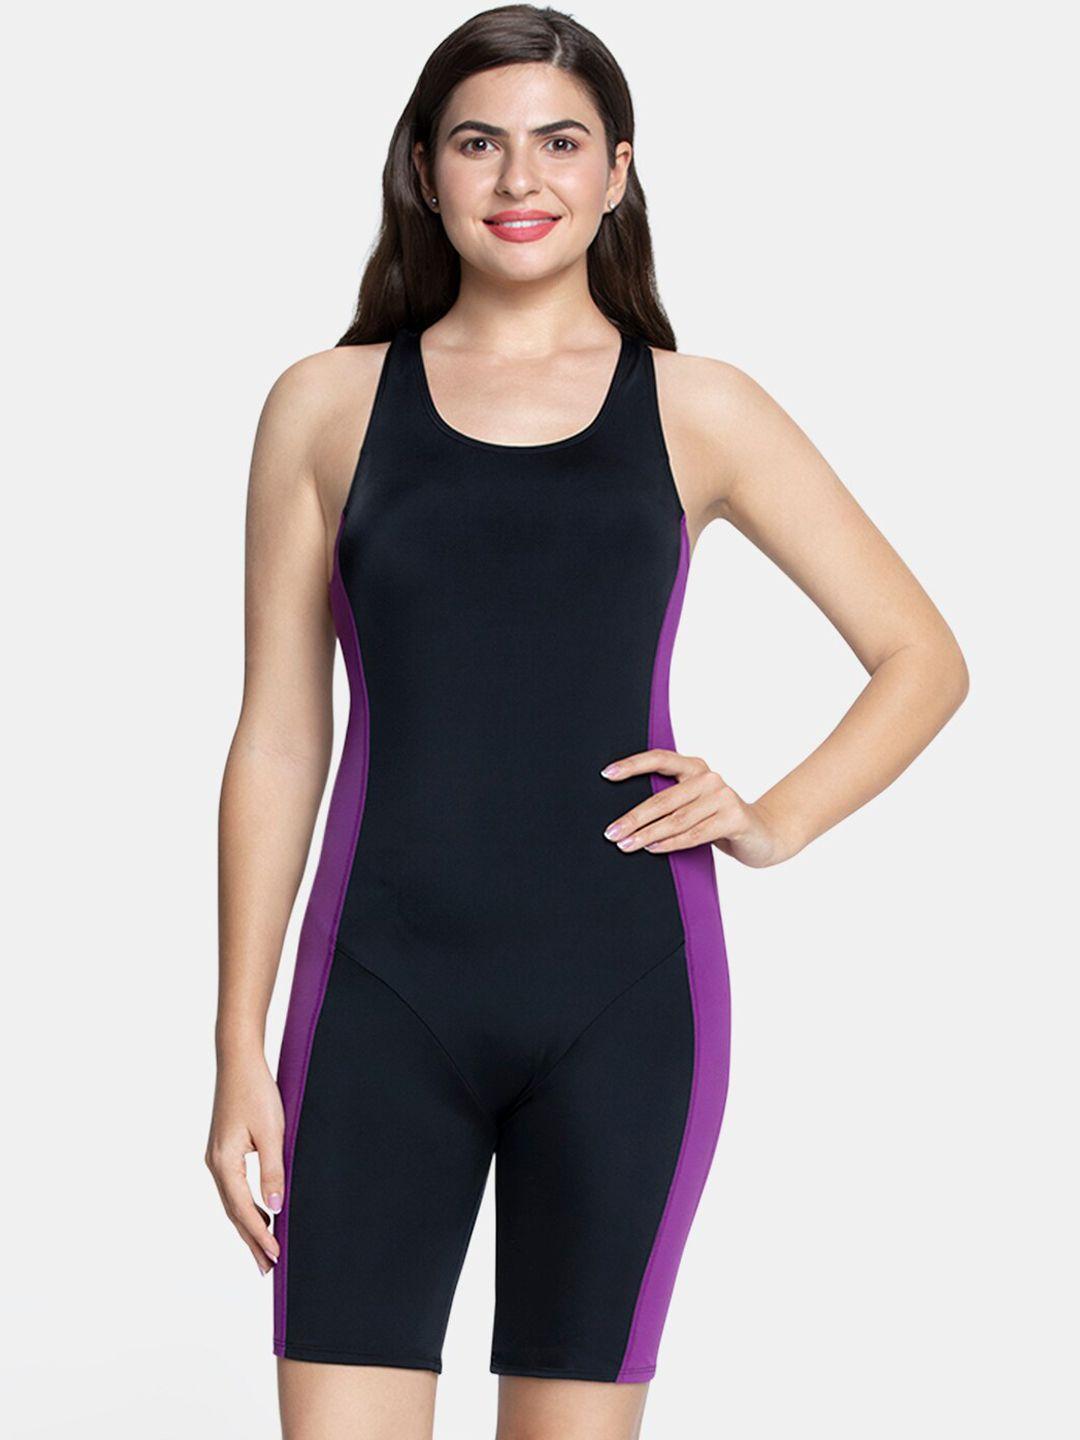 amante women black & purple solid padded legsuit swimwear